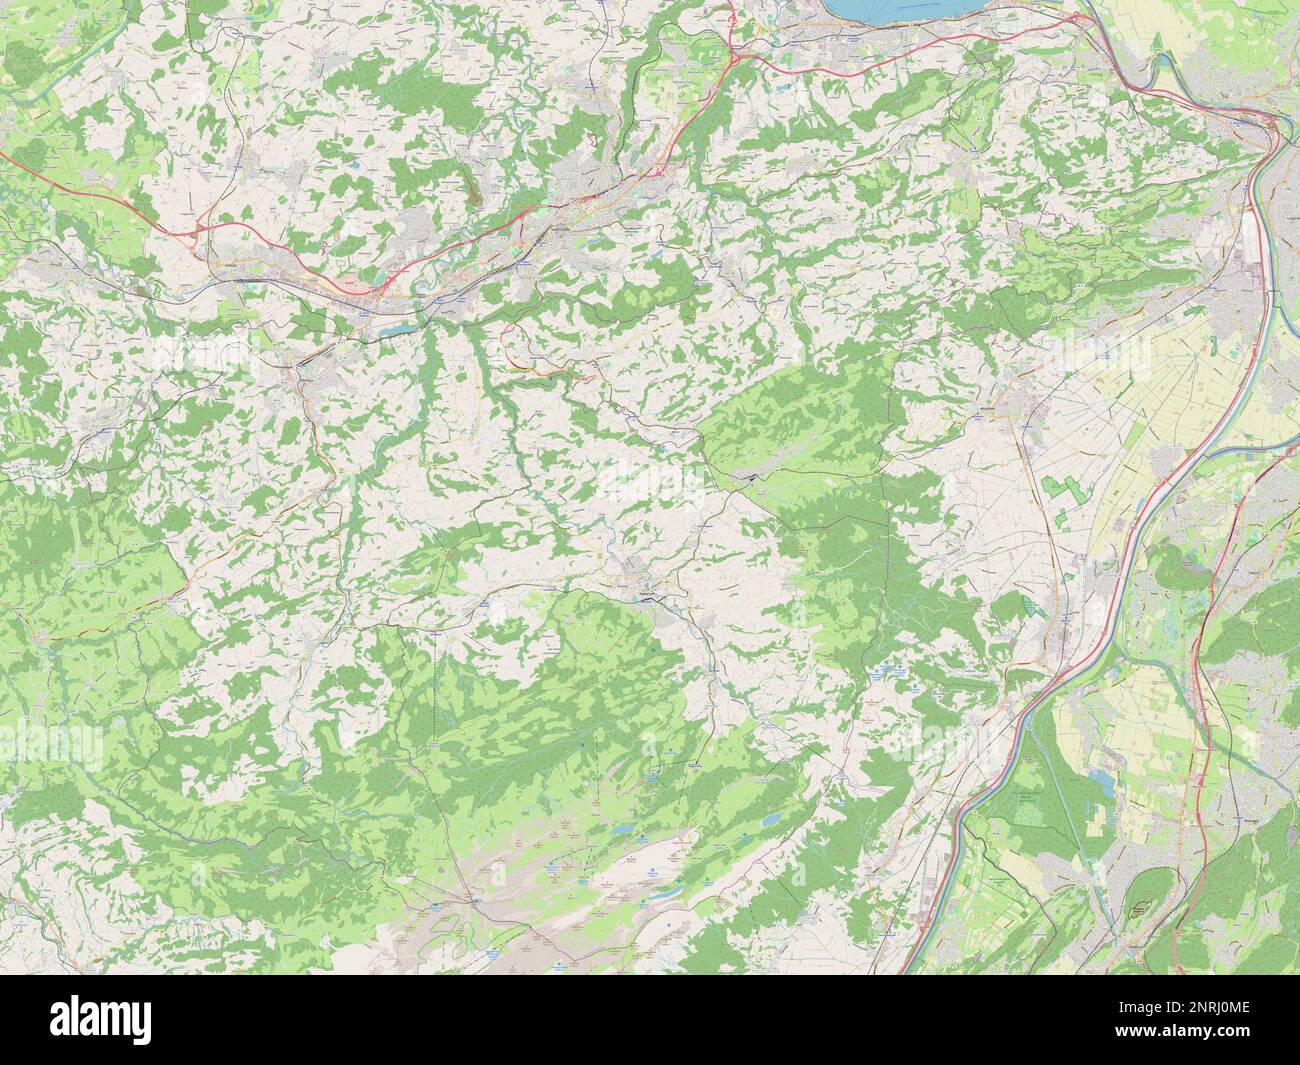 Appenzell Ausserrhoden, canton of Switzerland. Open Street Map Stock Photo